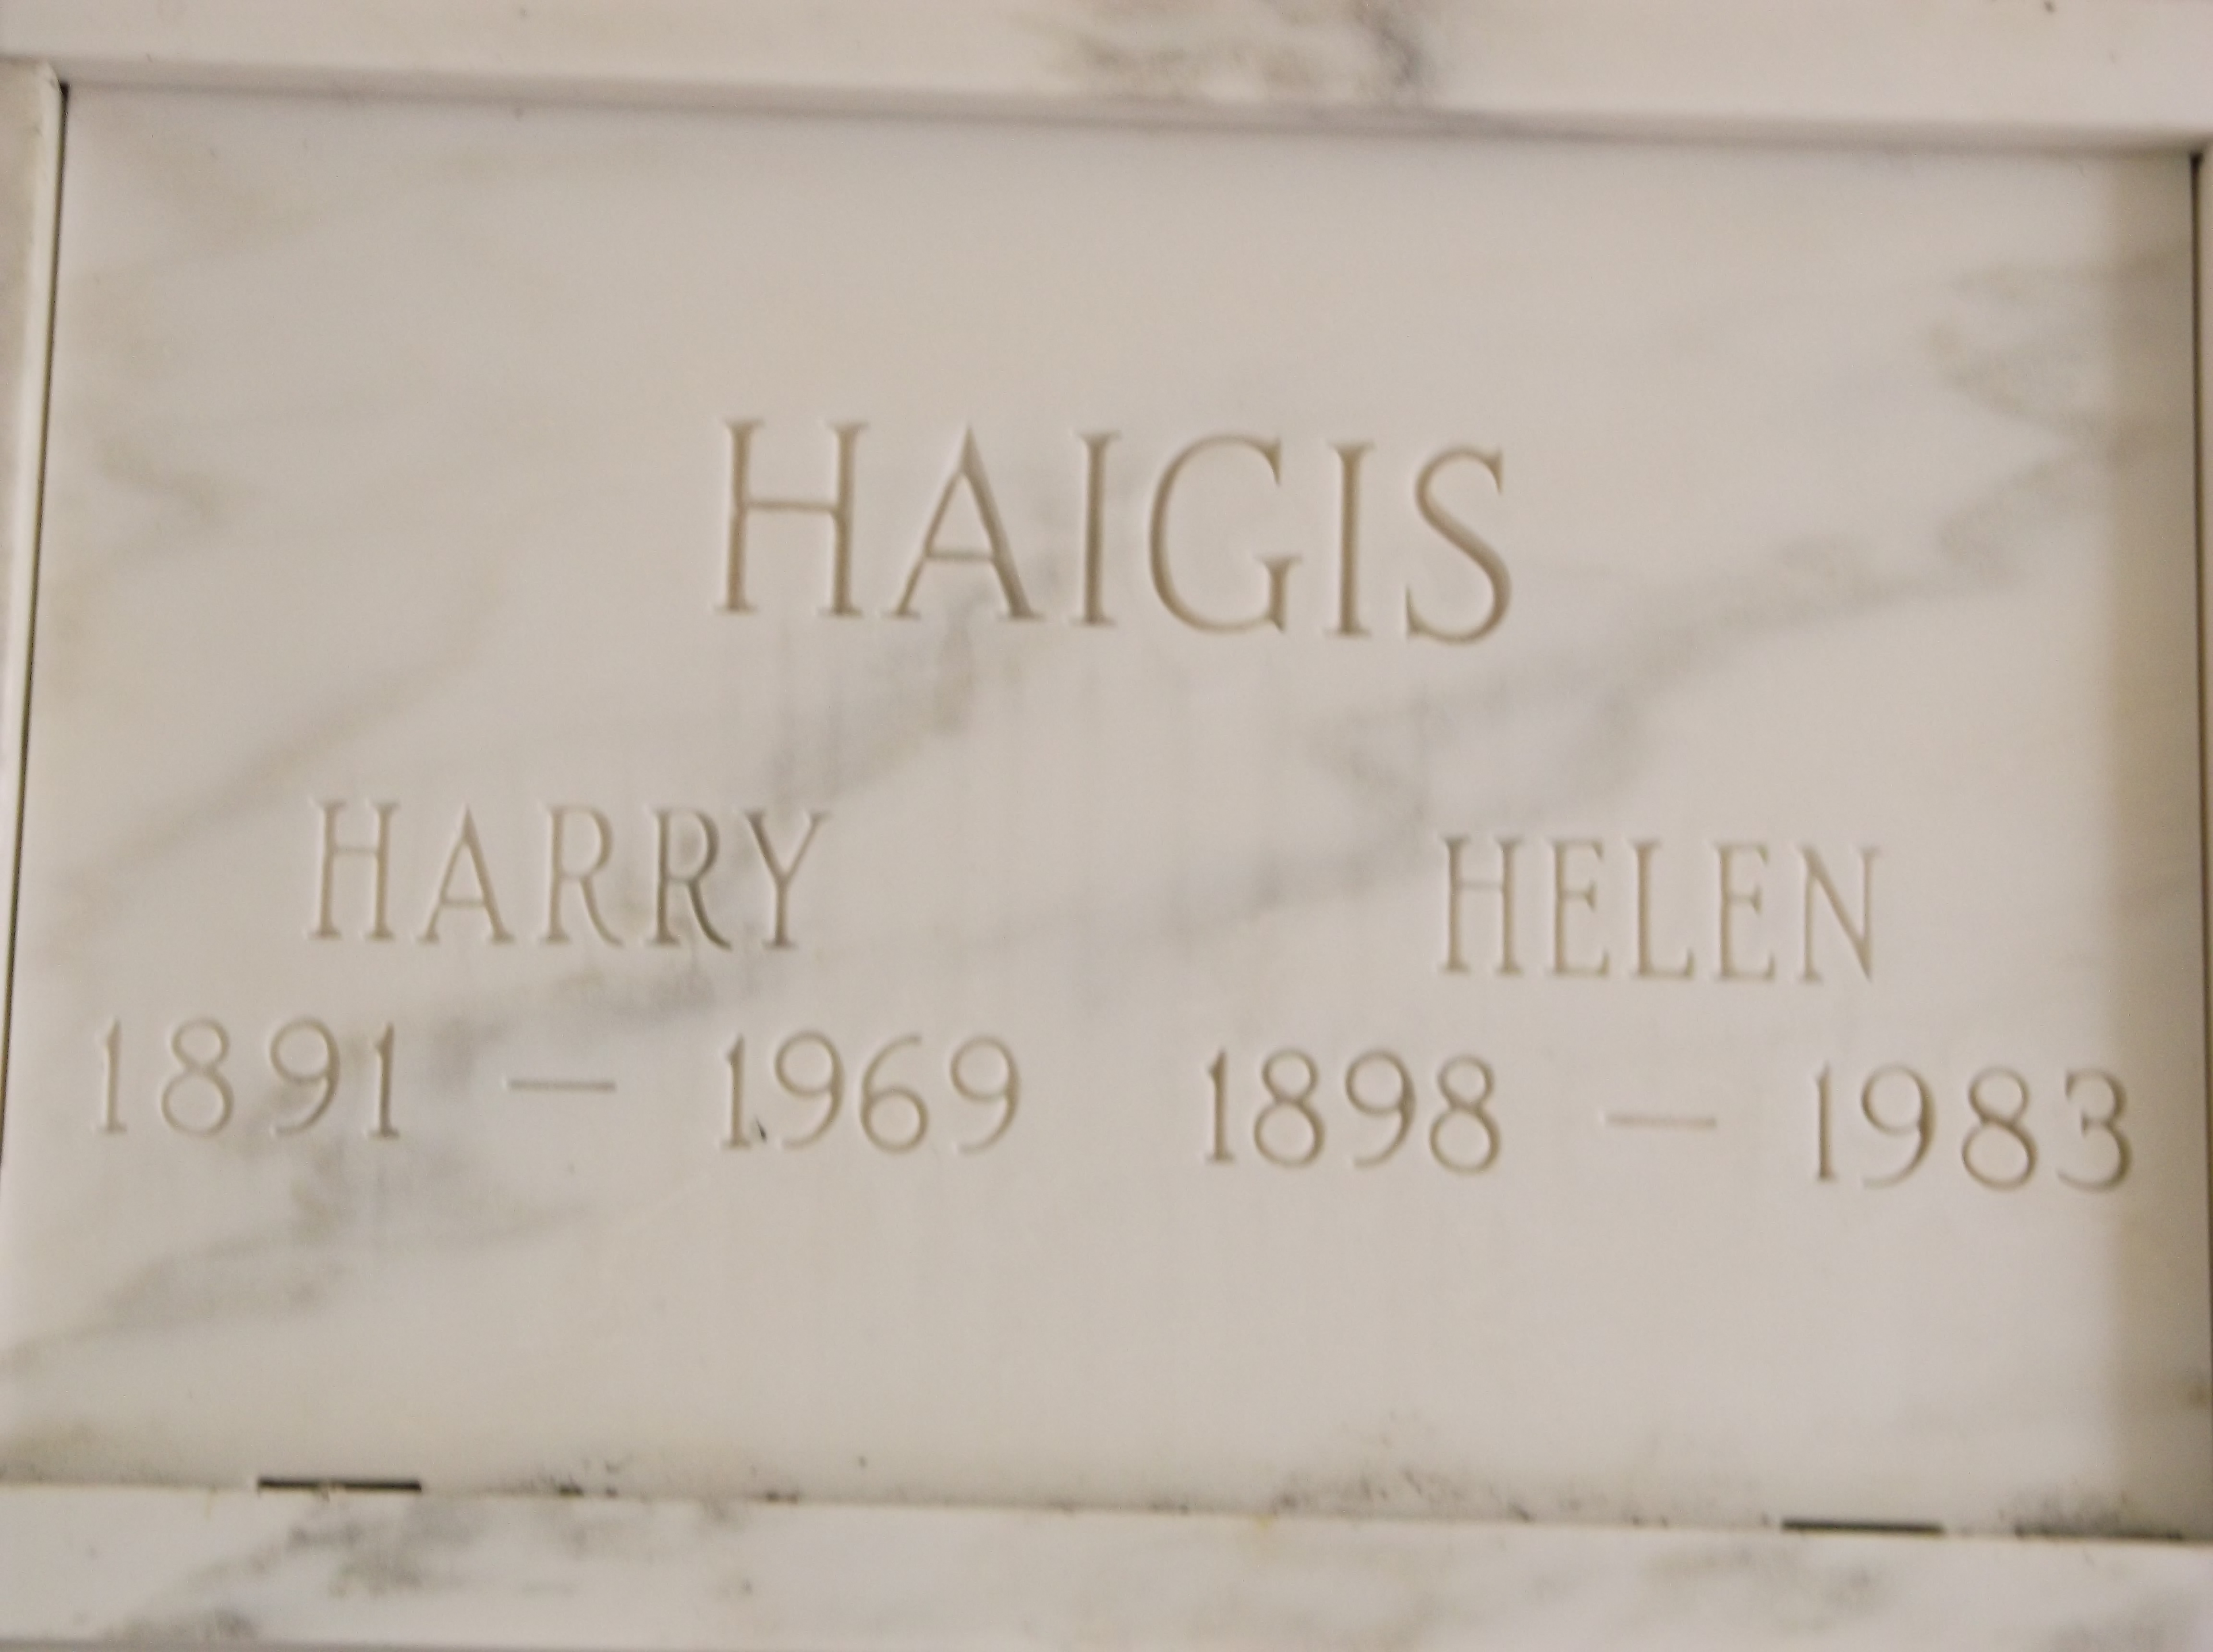 Harry Haigis